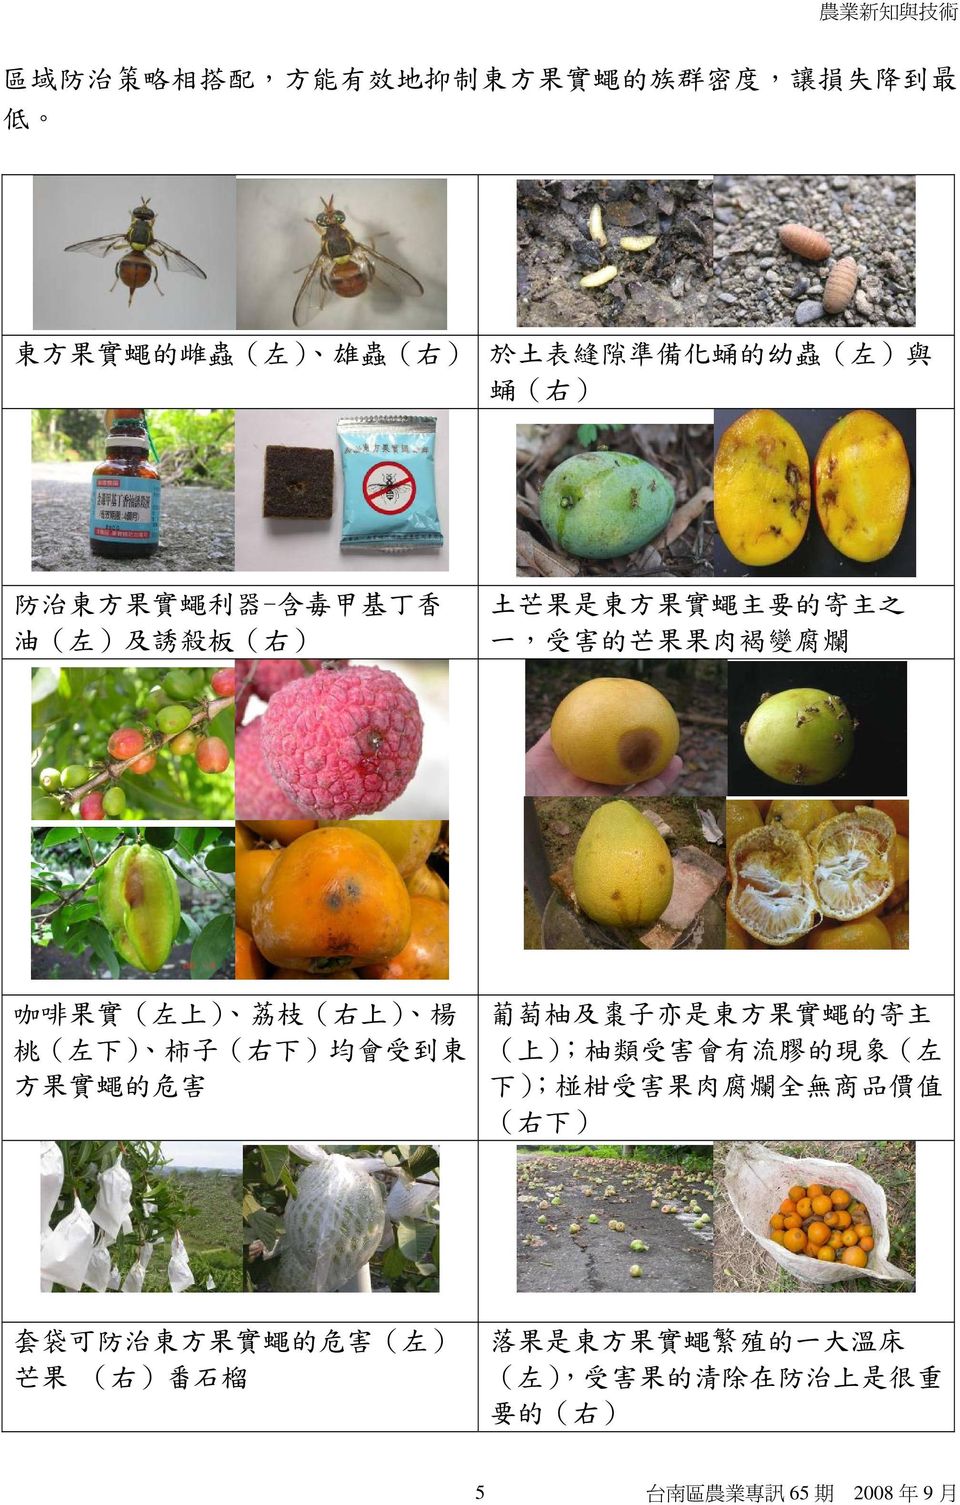 楊 桃 ( 左 下 ) 柿 子 ( 右 下 ) 均 會 受 到 東 方 果 實 蠅 的 危 害 葡 萄 柚 及 棗 子 亦 是 東 方 果 實 蠅 的 寄 主 ( 上 ); 柚 類 受 害 會 有 流 膠 的 現 象 ( 左 下 ); 椪 柑 受 害 果 肉 腐 爛 全 無